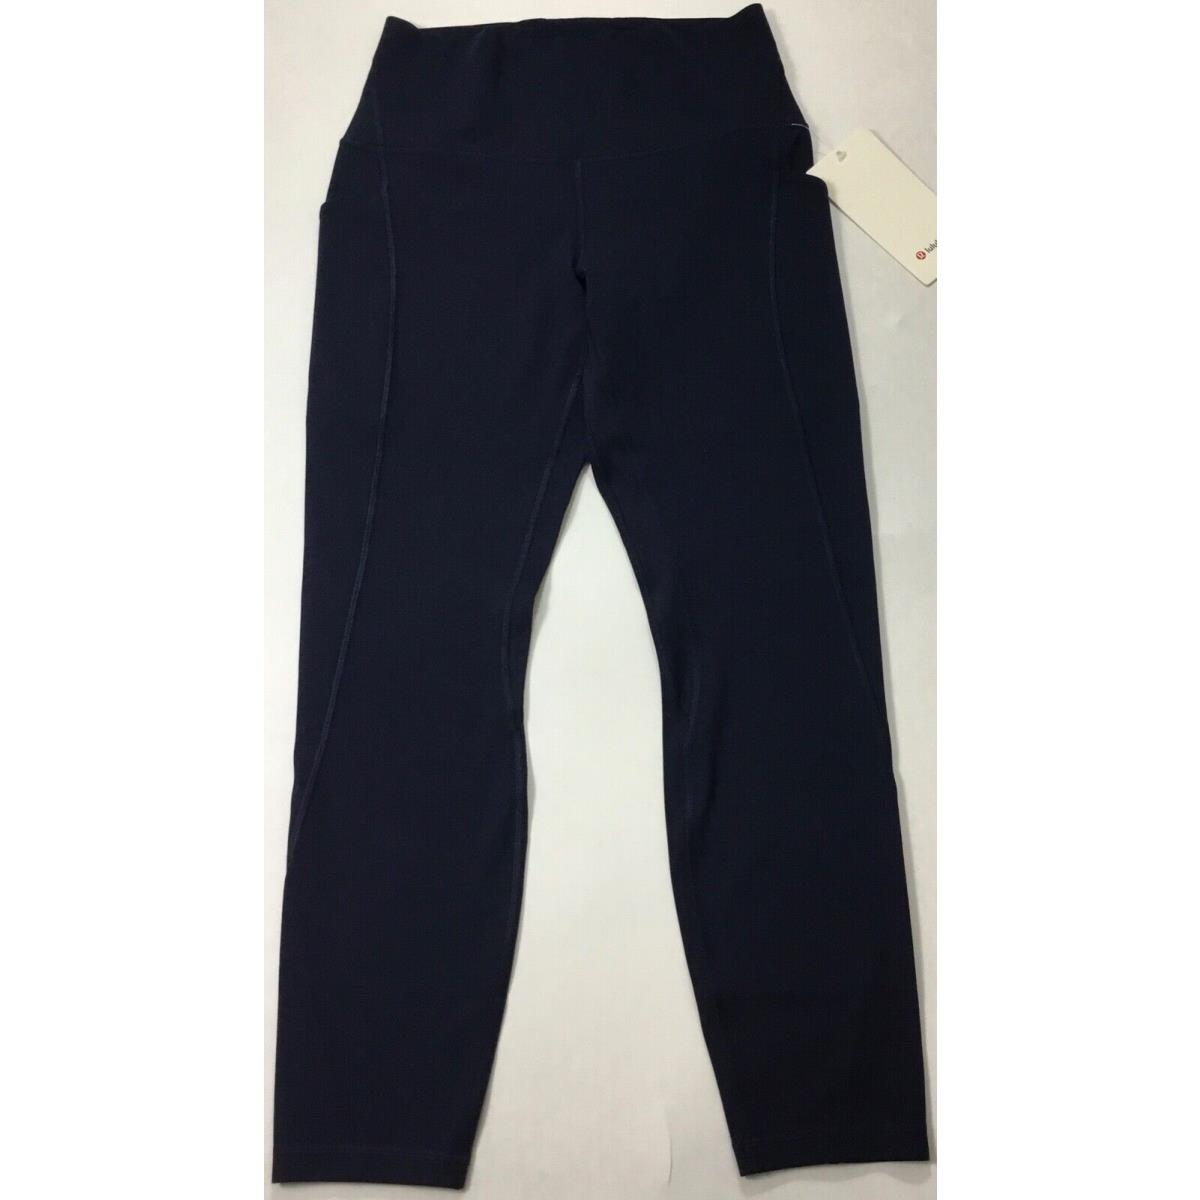 Lululemon Women`s Align Pant 25 Pockets Nulu LW5DCES Trnv Navy Blue Size 14